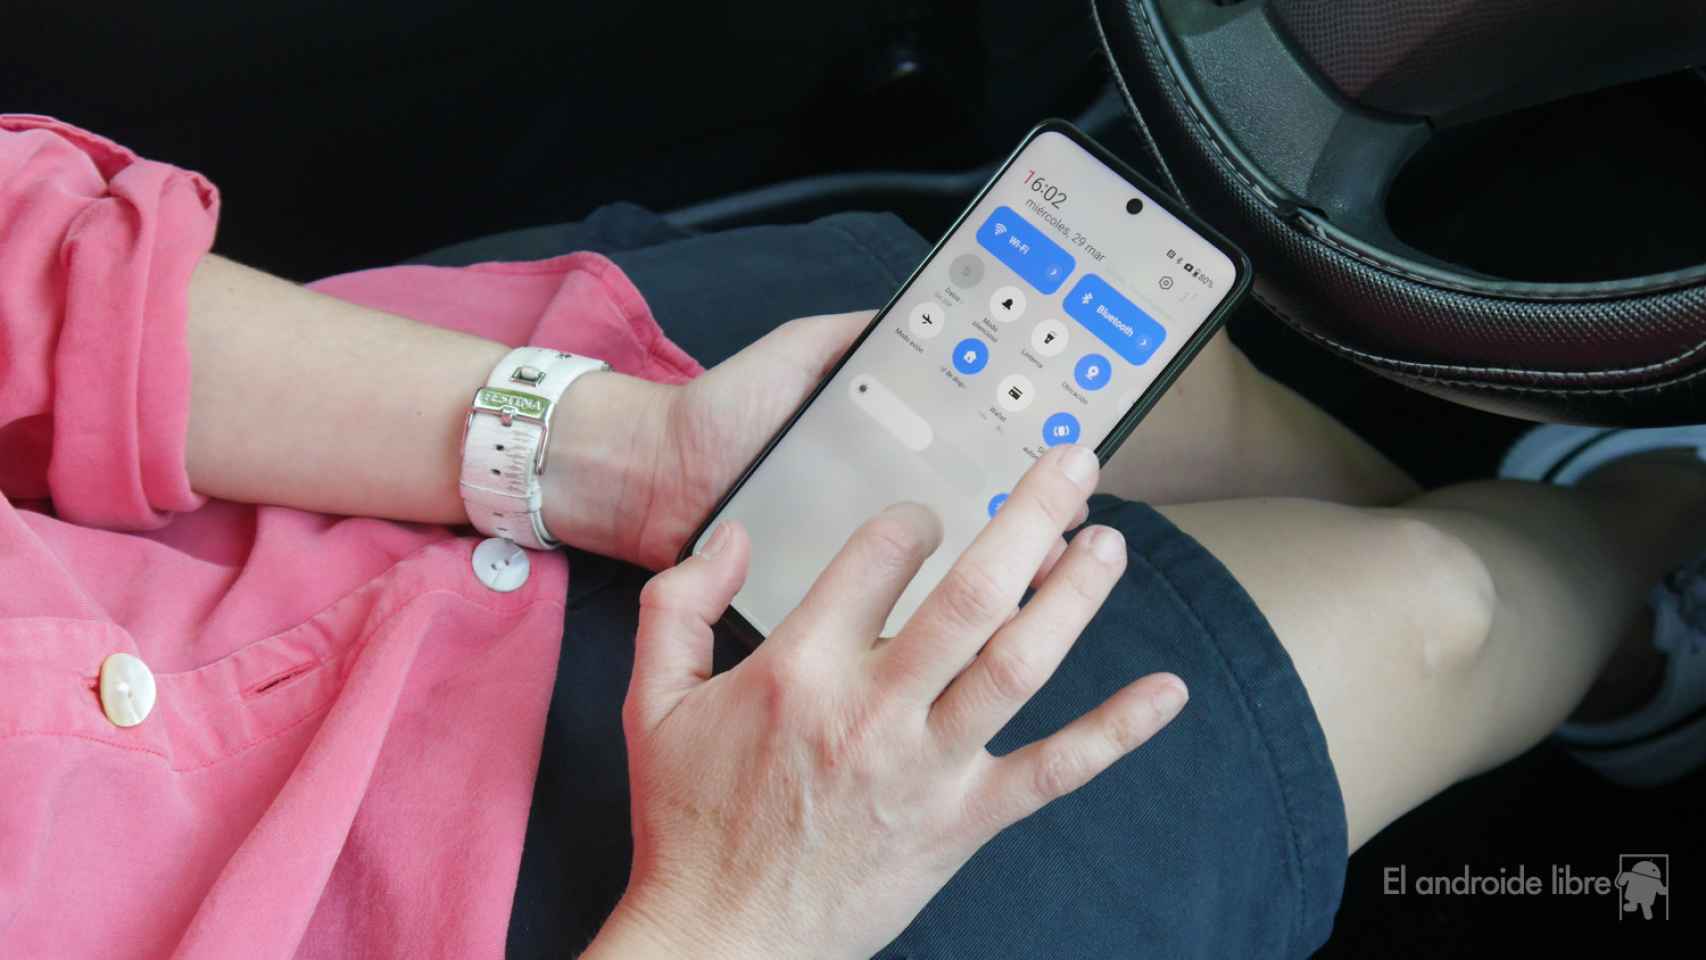 OnePlus Nord CE 3 Lite 5G, análisis: un móvil del pasado con un problema  del presente